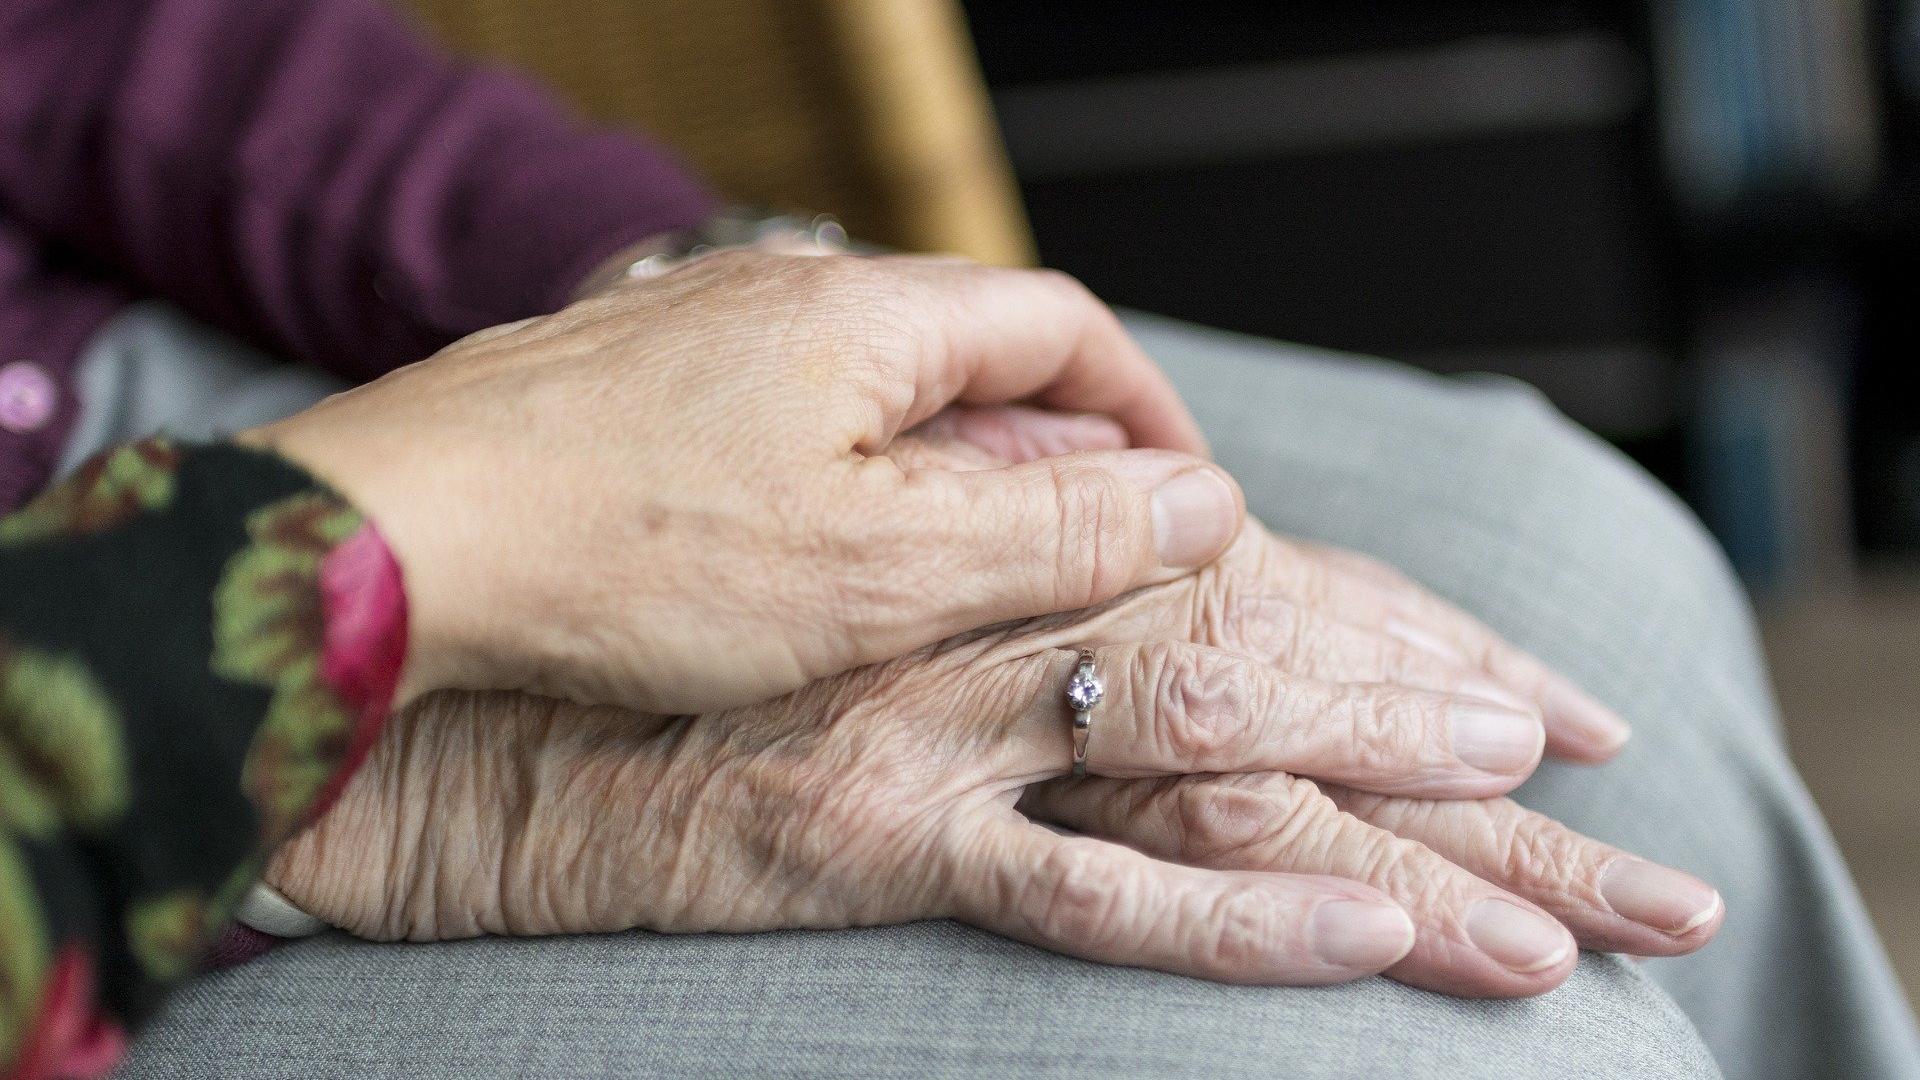 Stimmungsbild zum Beitrag: Es werden aufeinander gelegte Hände von älteren Personen abgebildet.